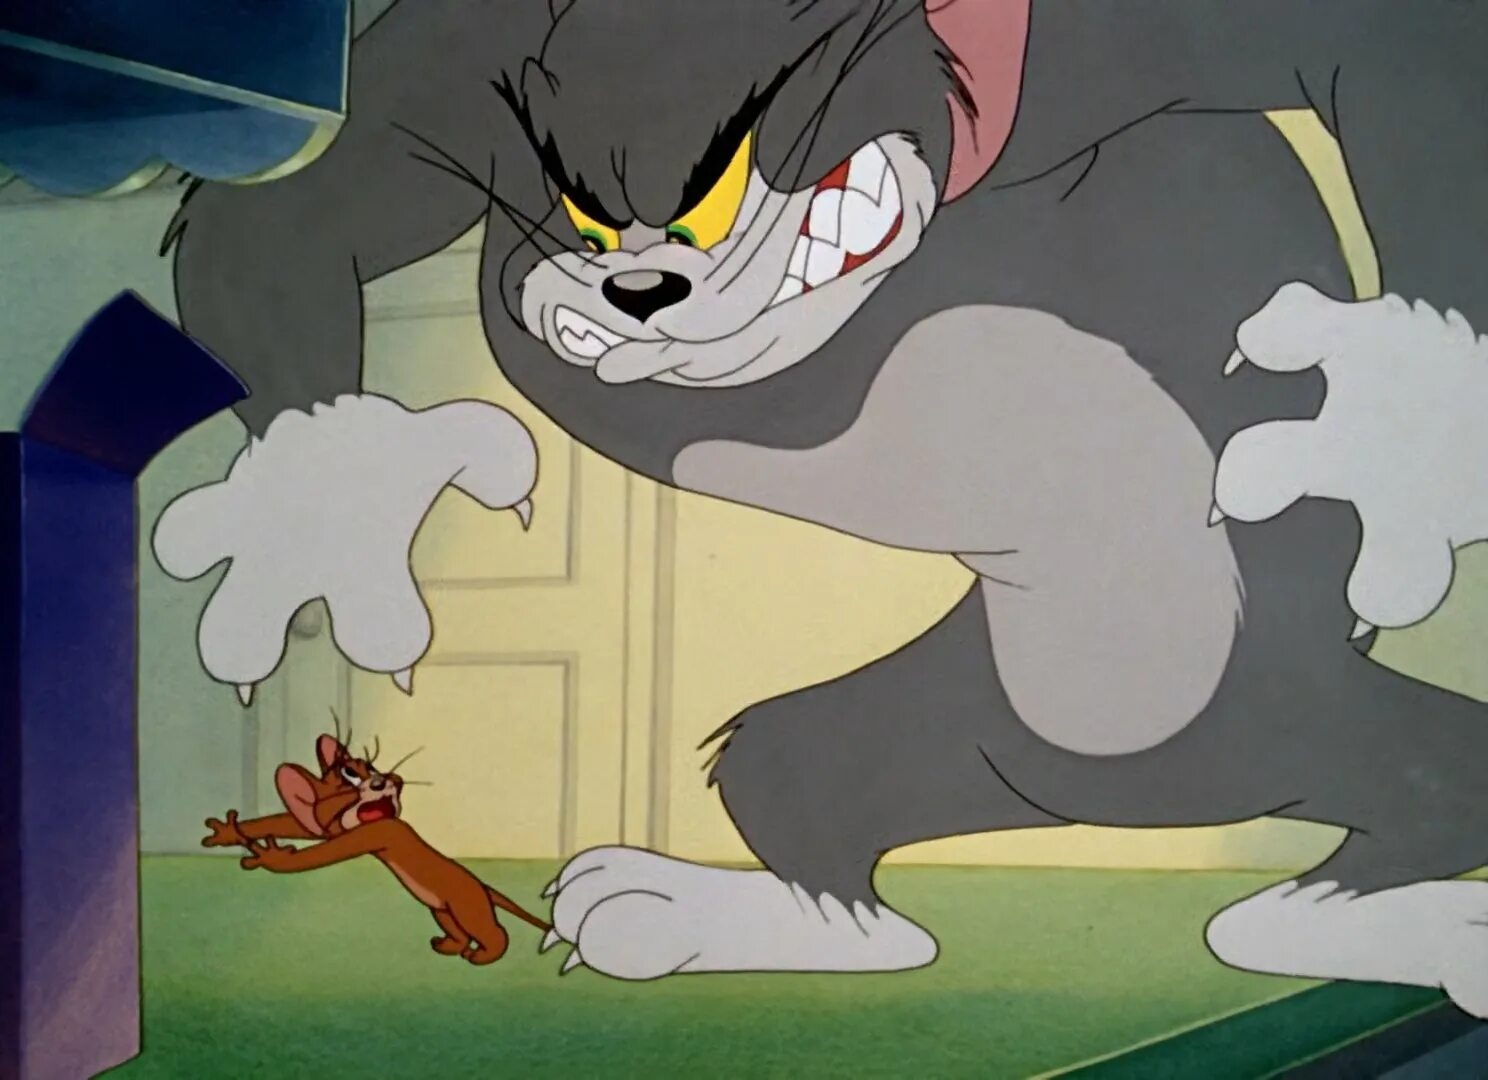 В каком году вышел том и джерри. Том и Джерри 1996. Том и Джерри Tom and Jerry. Tom and Jerry 1957.